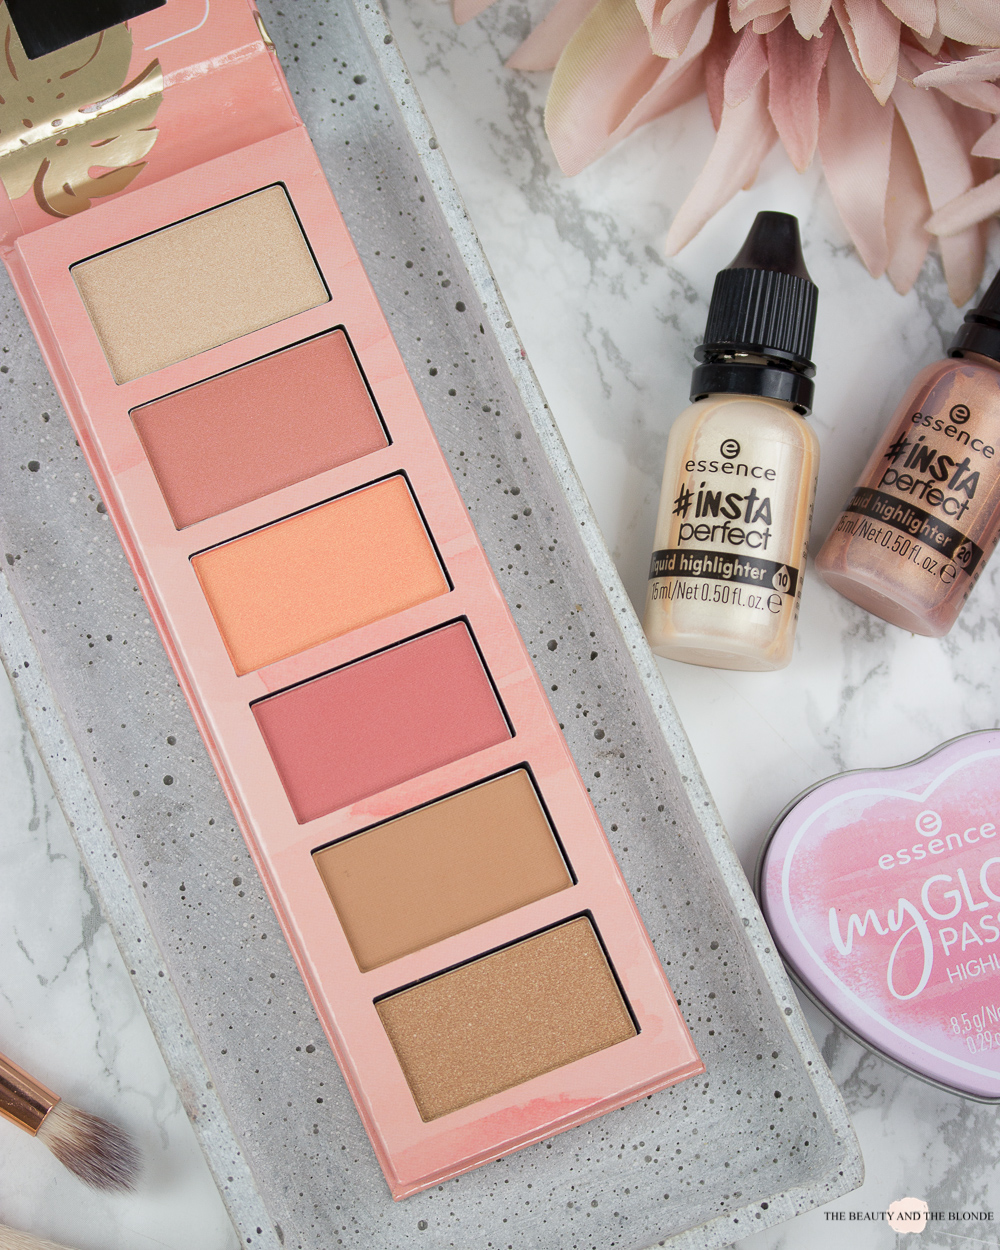 essence hey cheeks blush bronzer highlighter palette update 2019 review